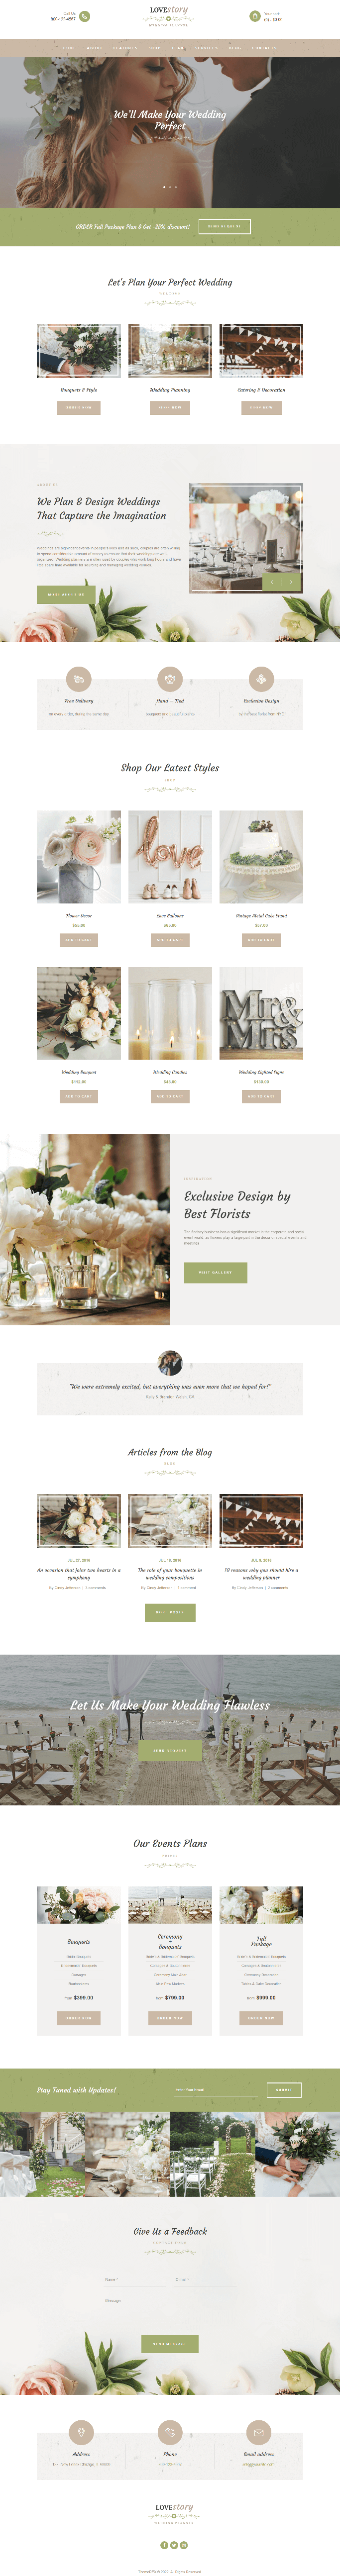 jasa pembuatan website undangan pernikahan wedding invitation